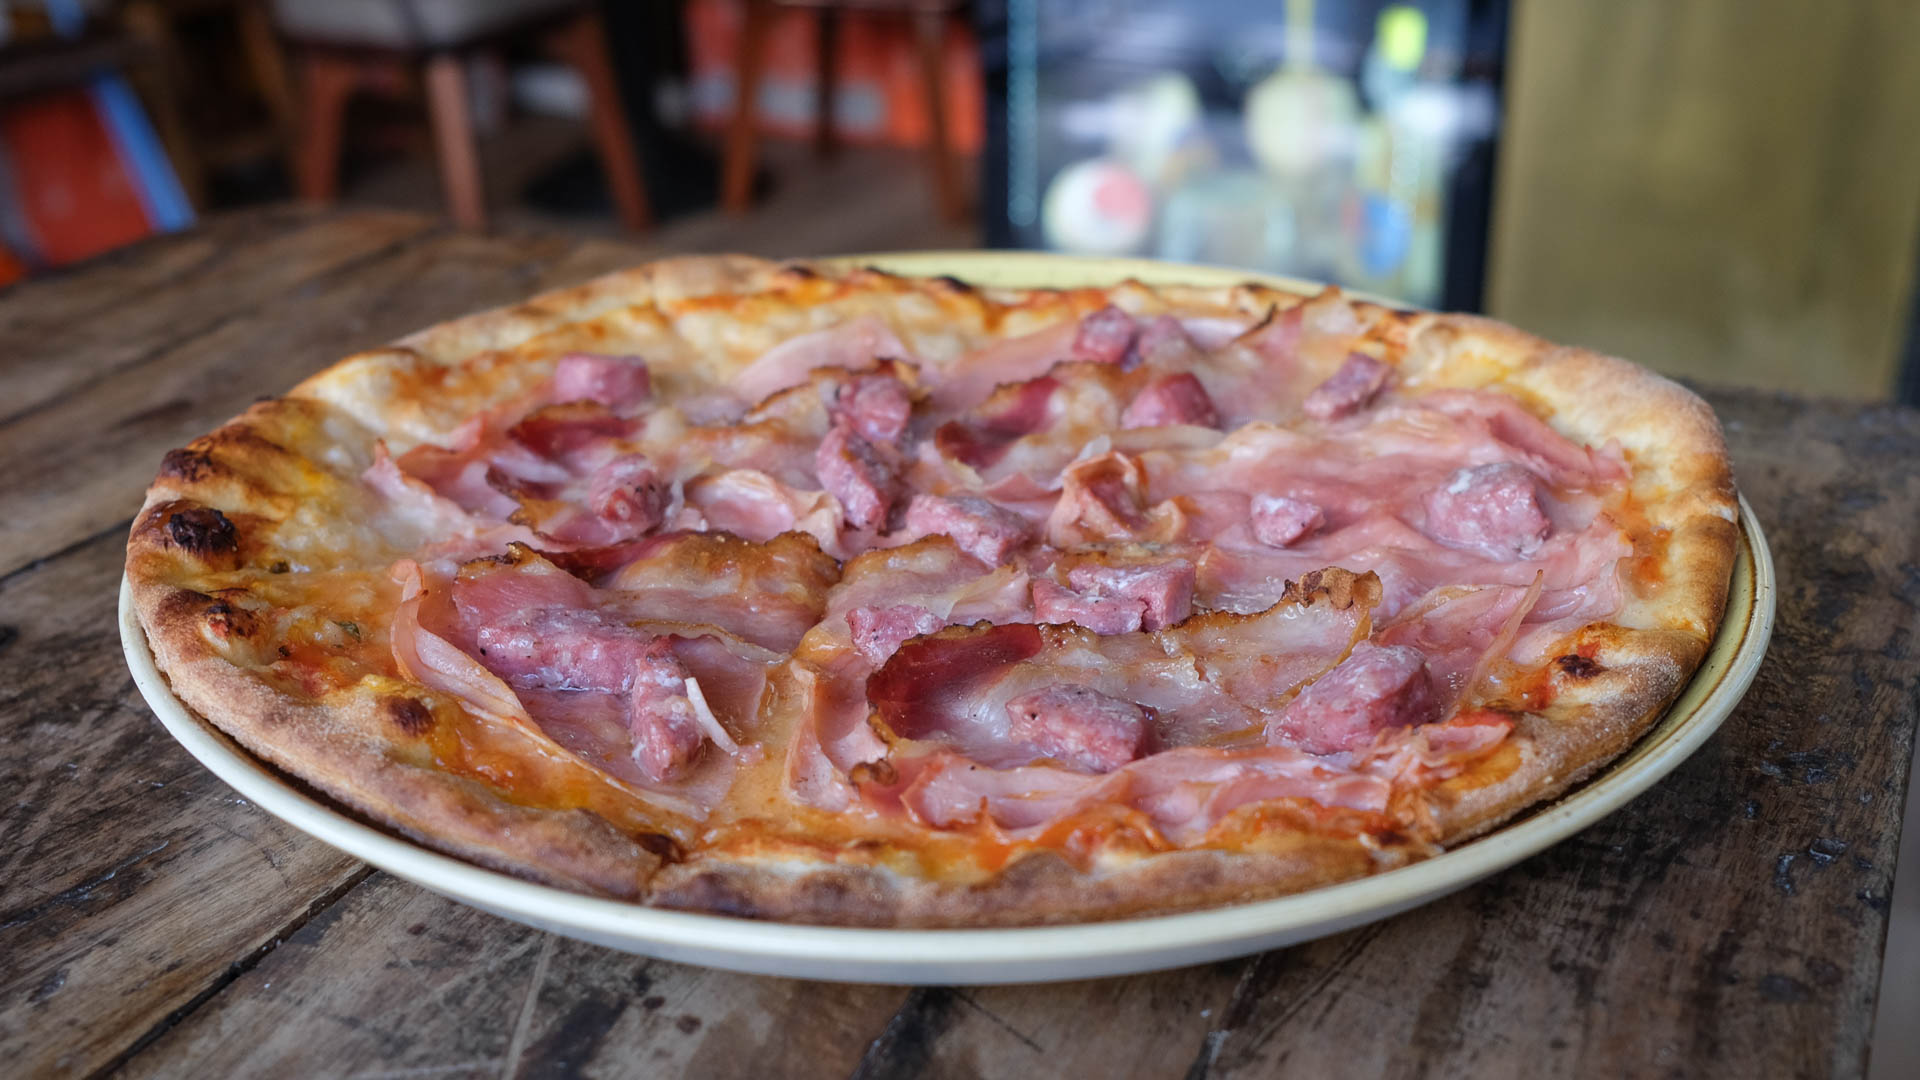 Norcina er til dem, som er vilde med en pizza smager af noget mere end blot chili.